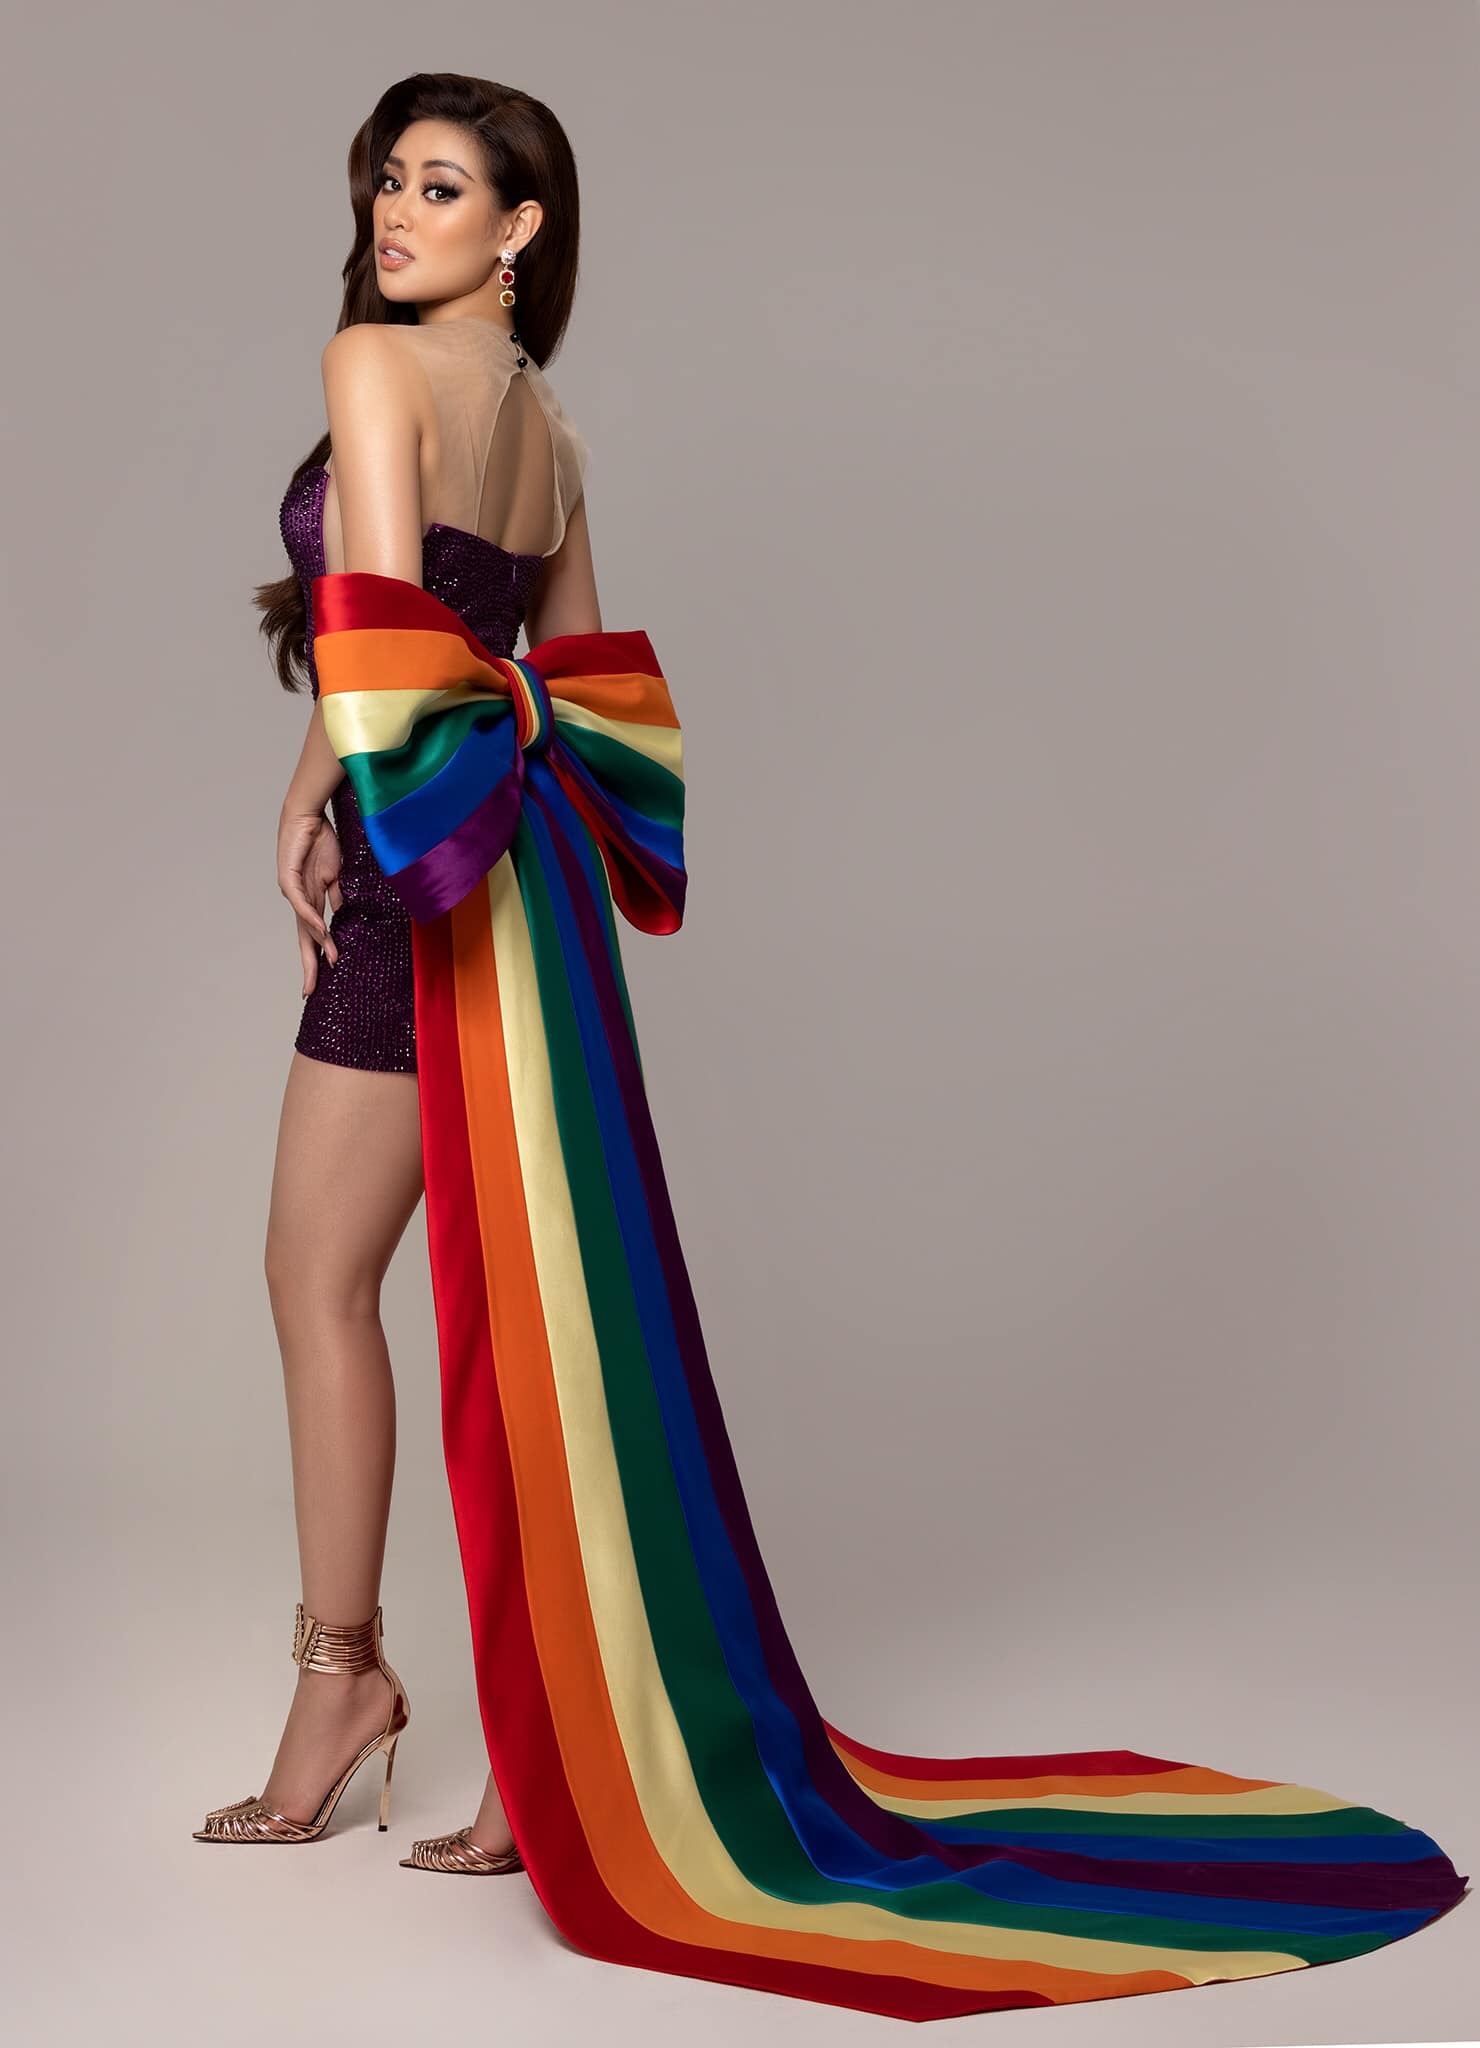 Váy áo cờ lục sắc LGBT: Váy áo cờ lục sắc LGBT không chỉ là món đồ thời trang mà còn là một cách thể hiện tình yêu và ủng hộ đa dạng trong xã hội. Hãy cùng chúng tôi khám phá váy áo cờ lục sắc LGBT và tìm hiểu cách sử dụng món đồ này để thể hiện sự ủng hộ cho cộng đồng LGBT và tôn vinh sự đa dạng.